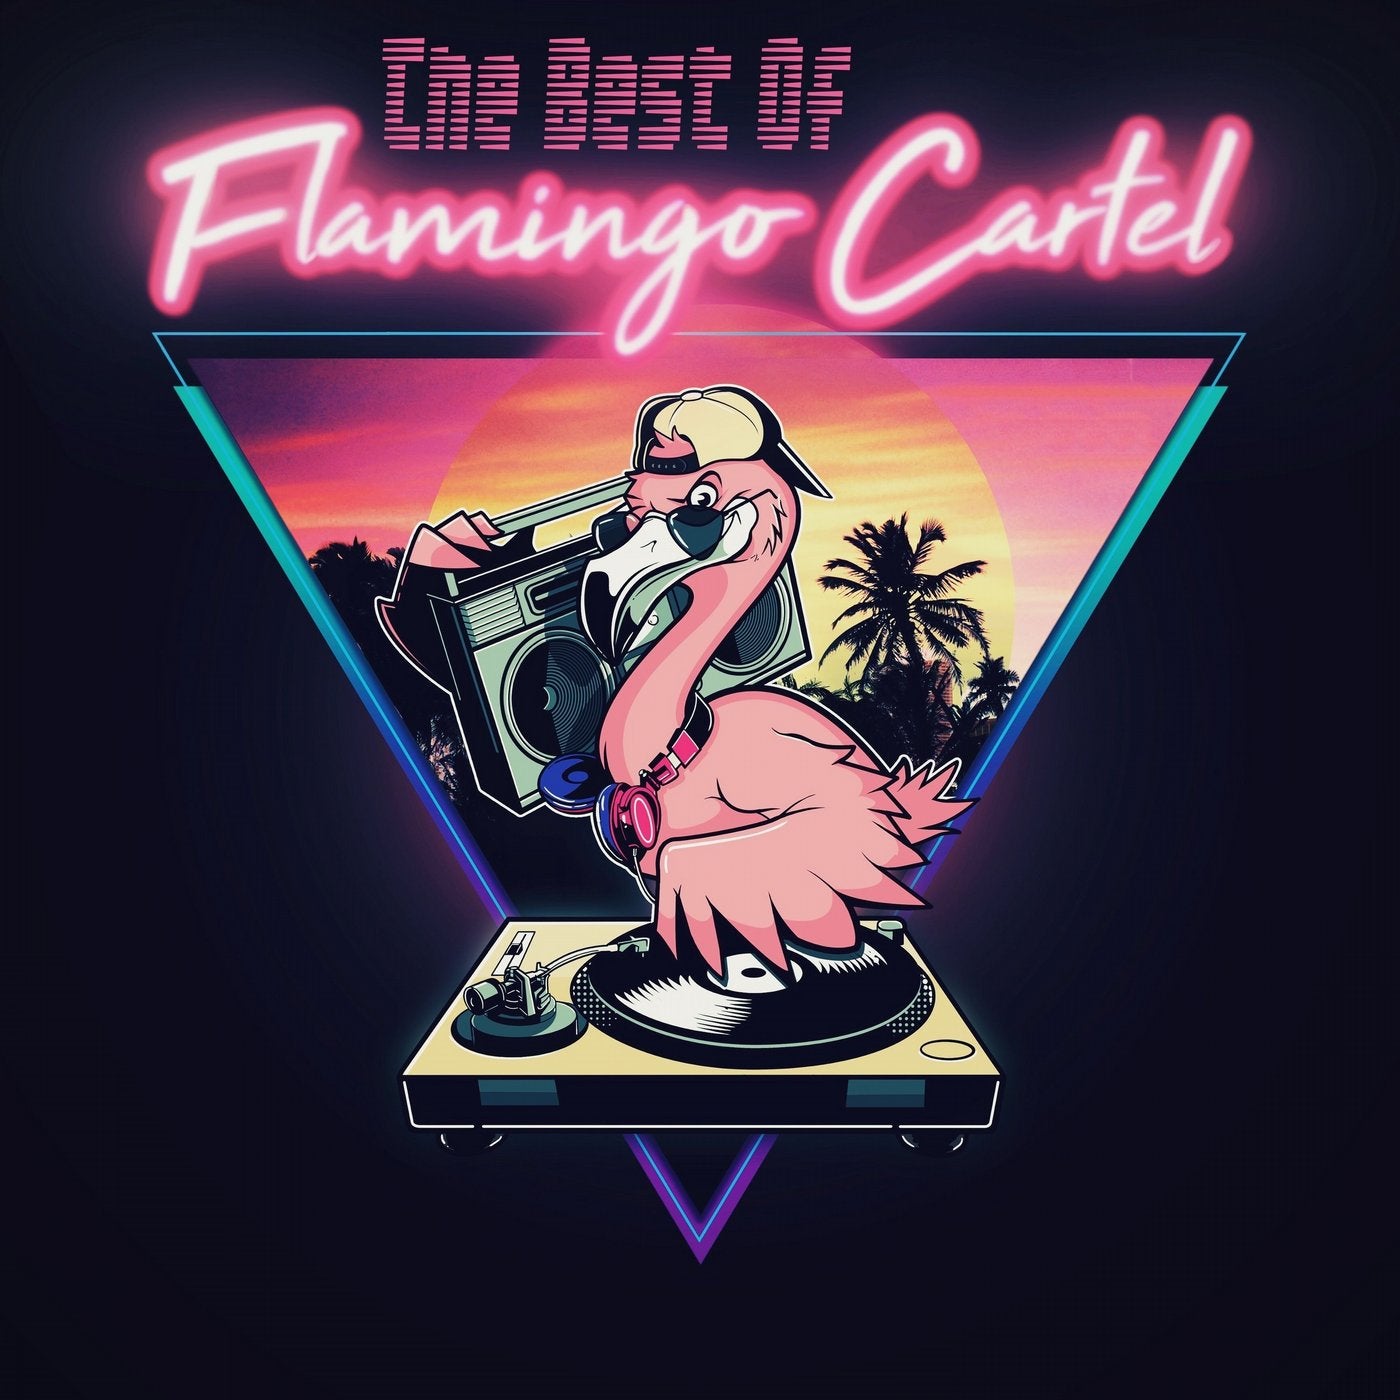 The Best of Flamingo Cartel